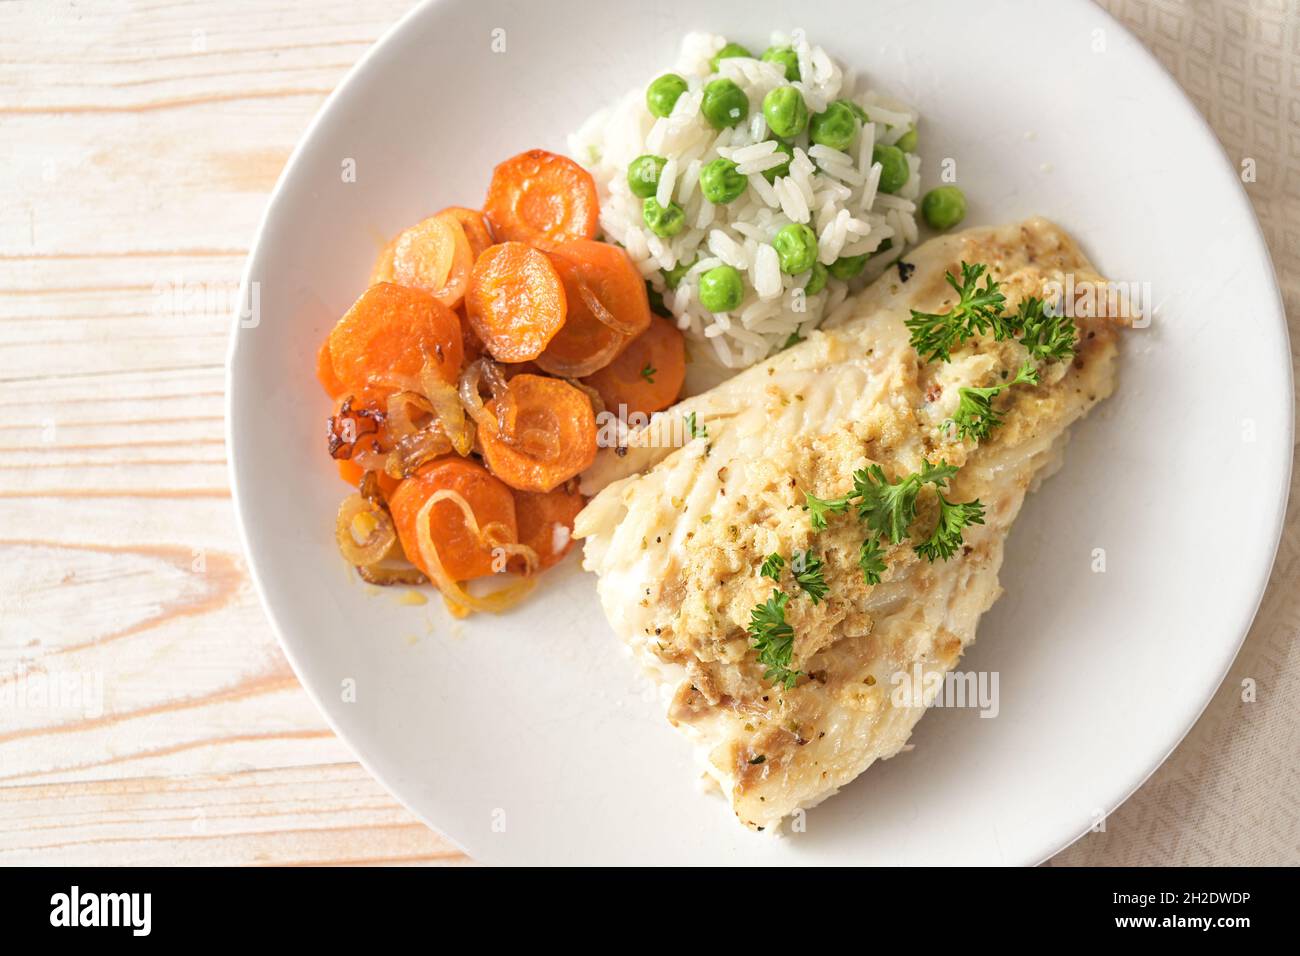 Repas de poisson sain à partir de filet de morue avec garniture épicée et persil, carottes et riz aux pois verts sur une assiette blanche, vue d'en haut, sel Banque D'Images